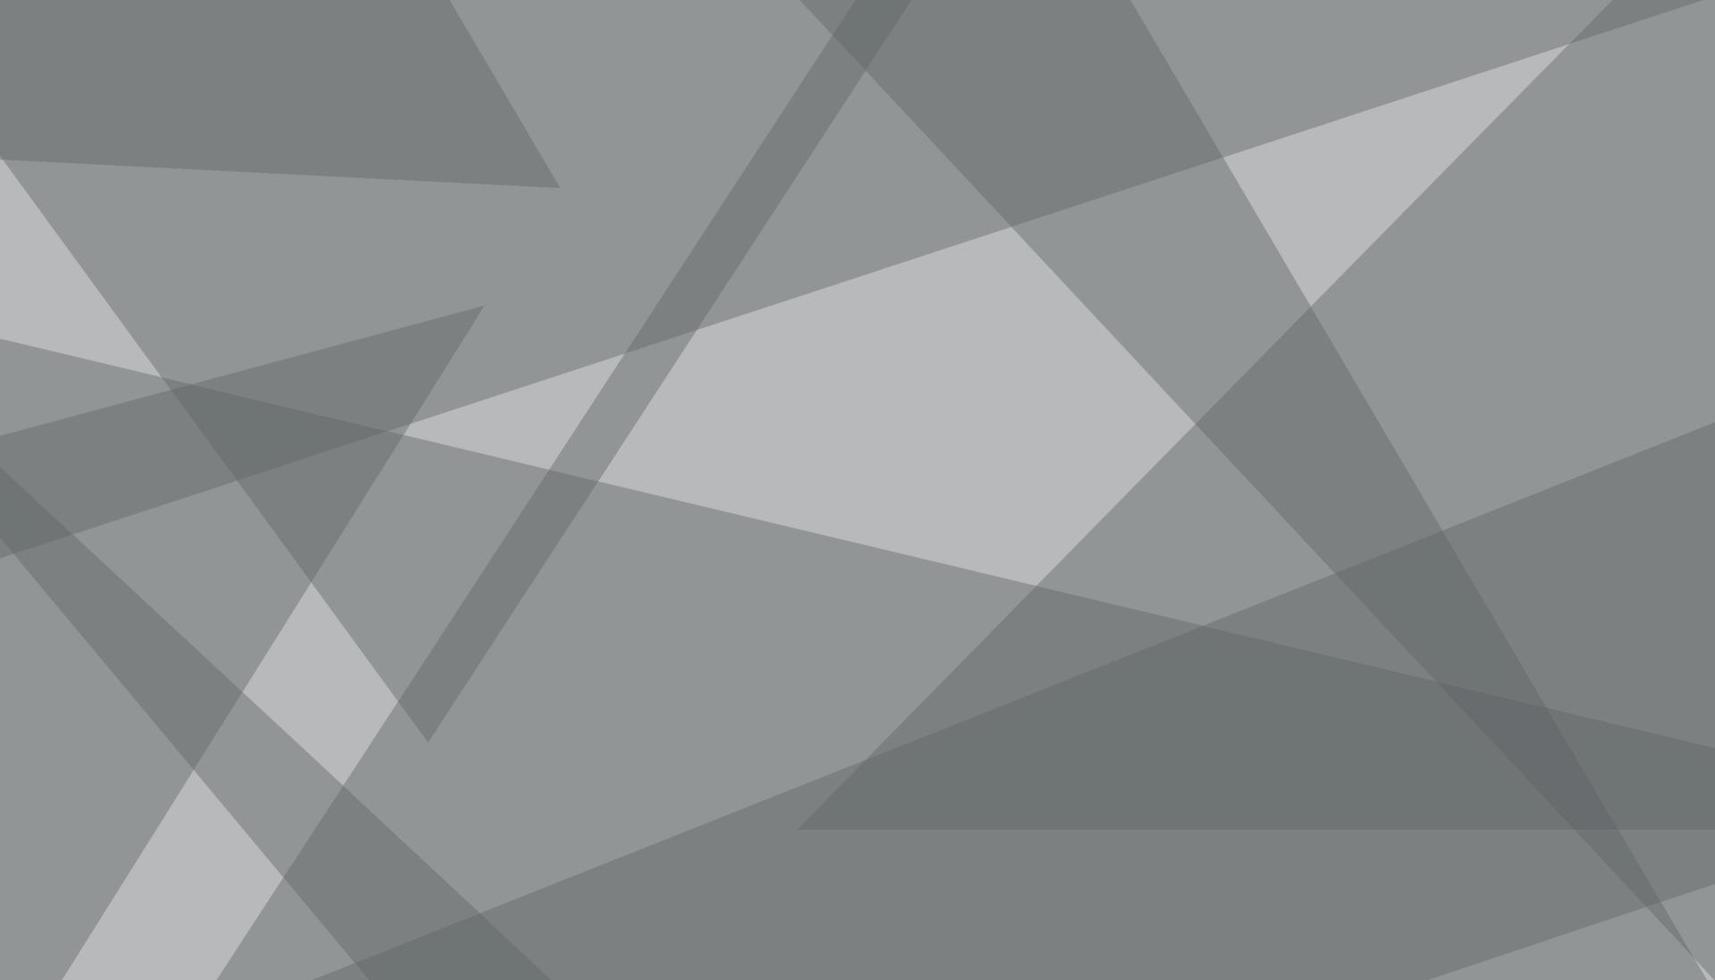 abstrakt geometrisk bakgrund med trianglar. vit och grå bakgrund. Plats design begrepp. texturerad vit transparent material i triangel former i slumpmässig dekorativ webb layout eller affisch, baner. vektor